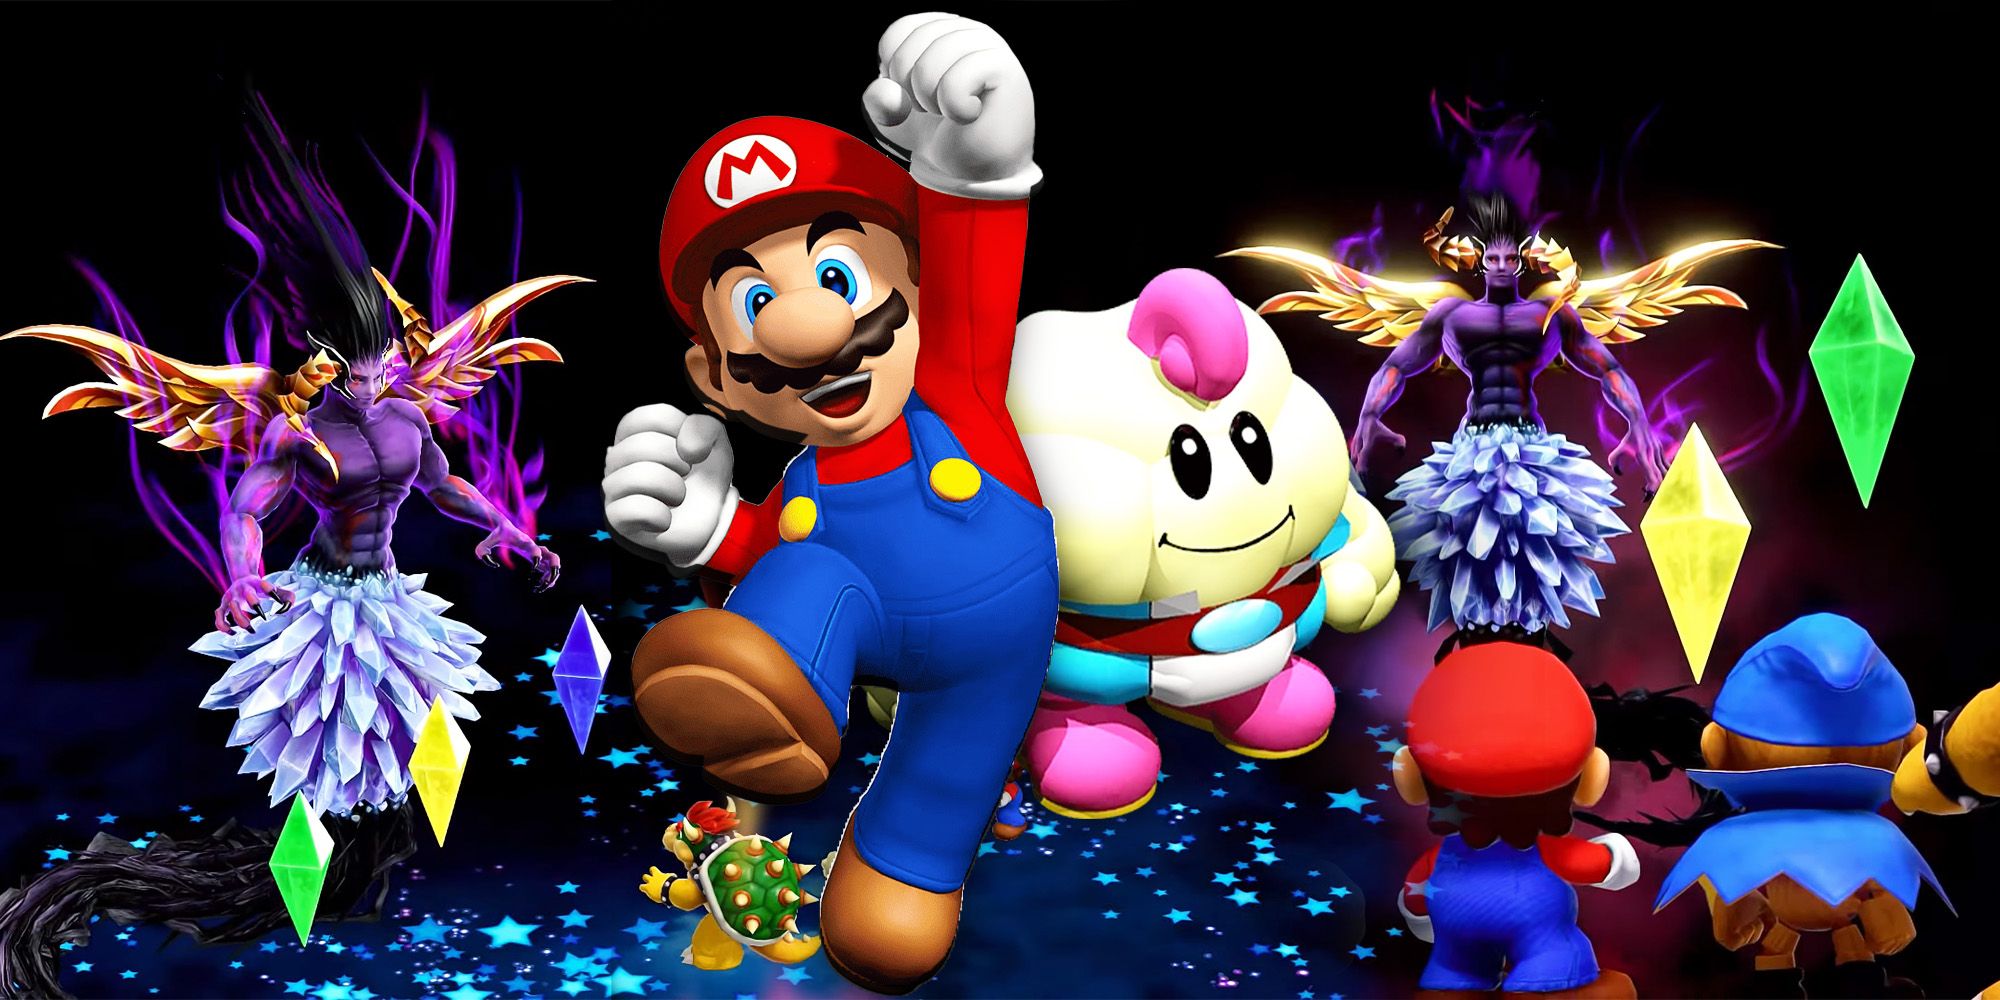 Los 10 jefes más difíciles de Super Mario RPG, clasificados por dificultad